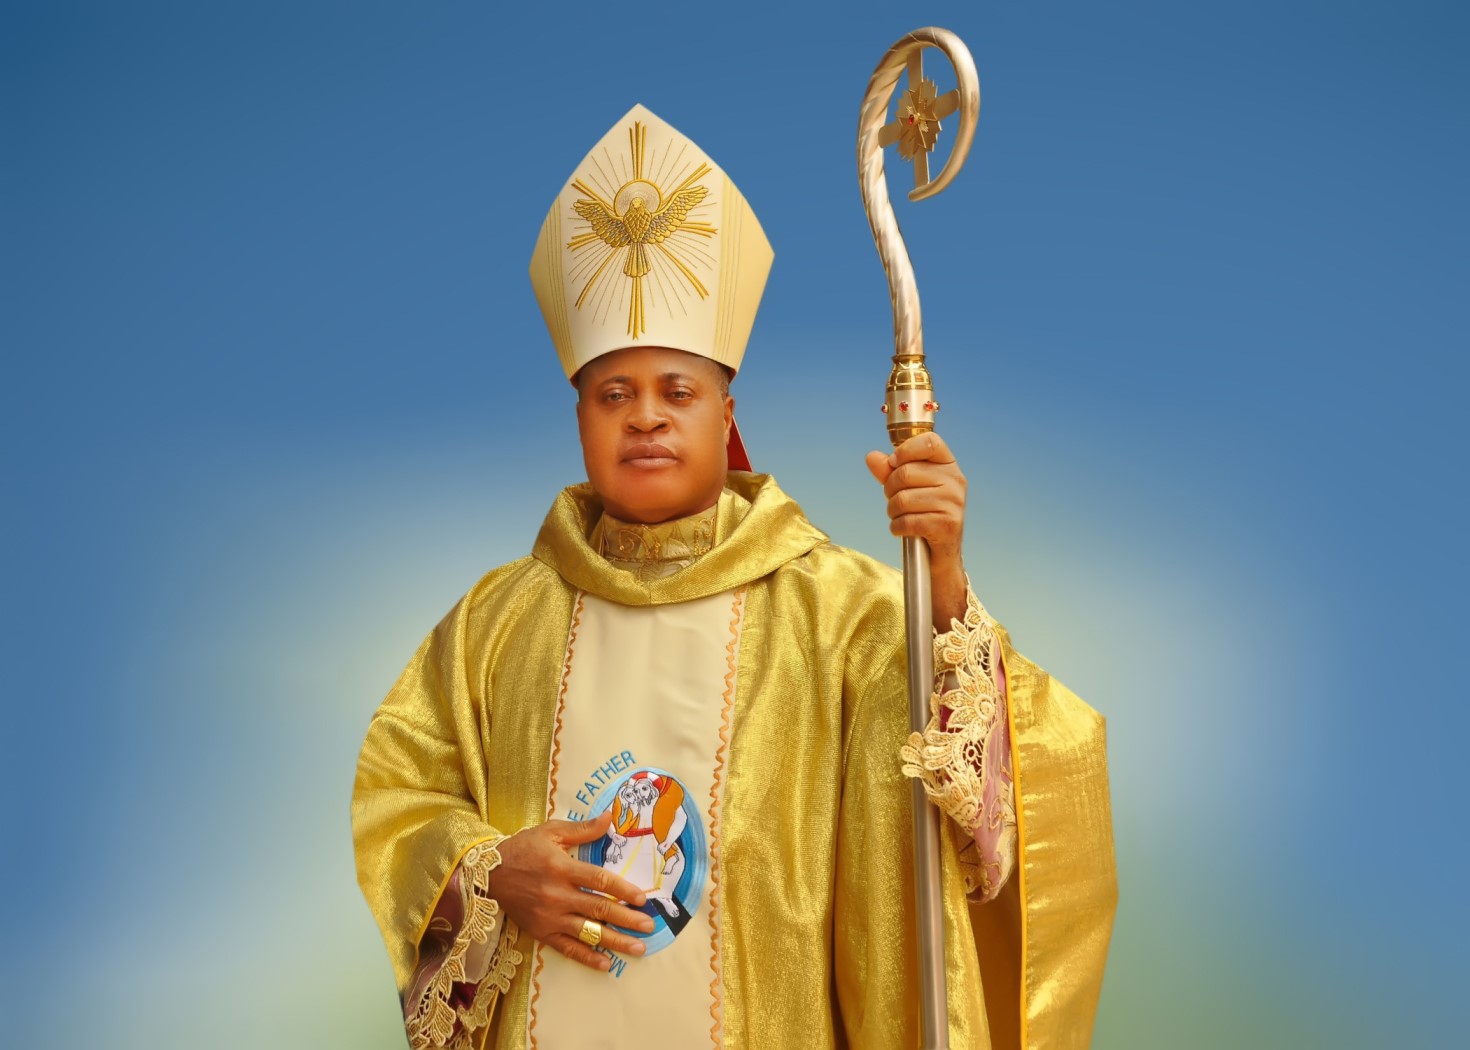 Bishop Peter Ebere Okpaleke of the newly-created Catholic Diocese of Ekwulobia